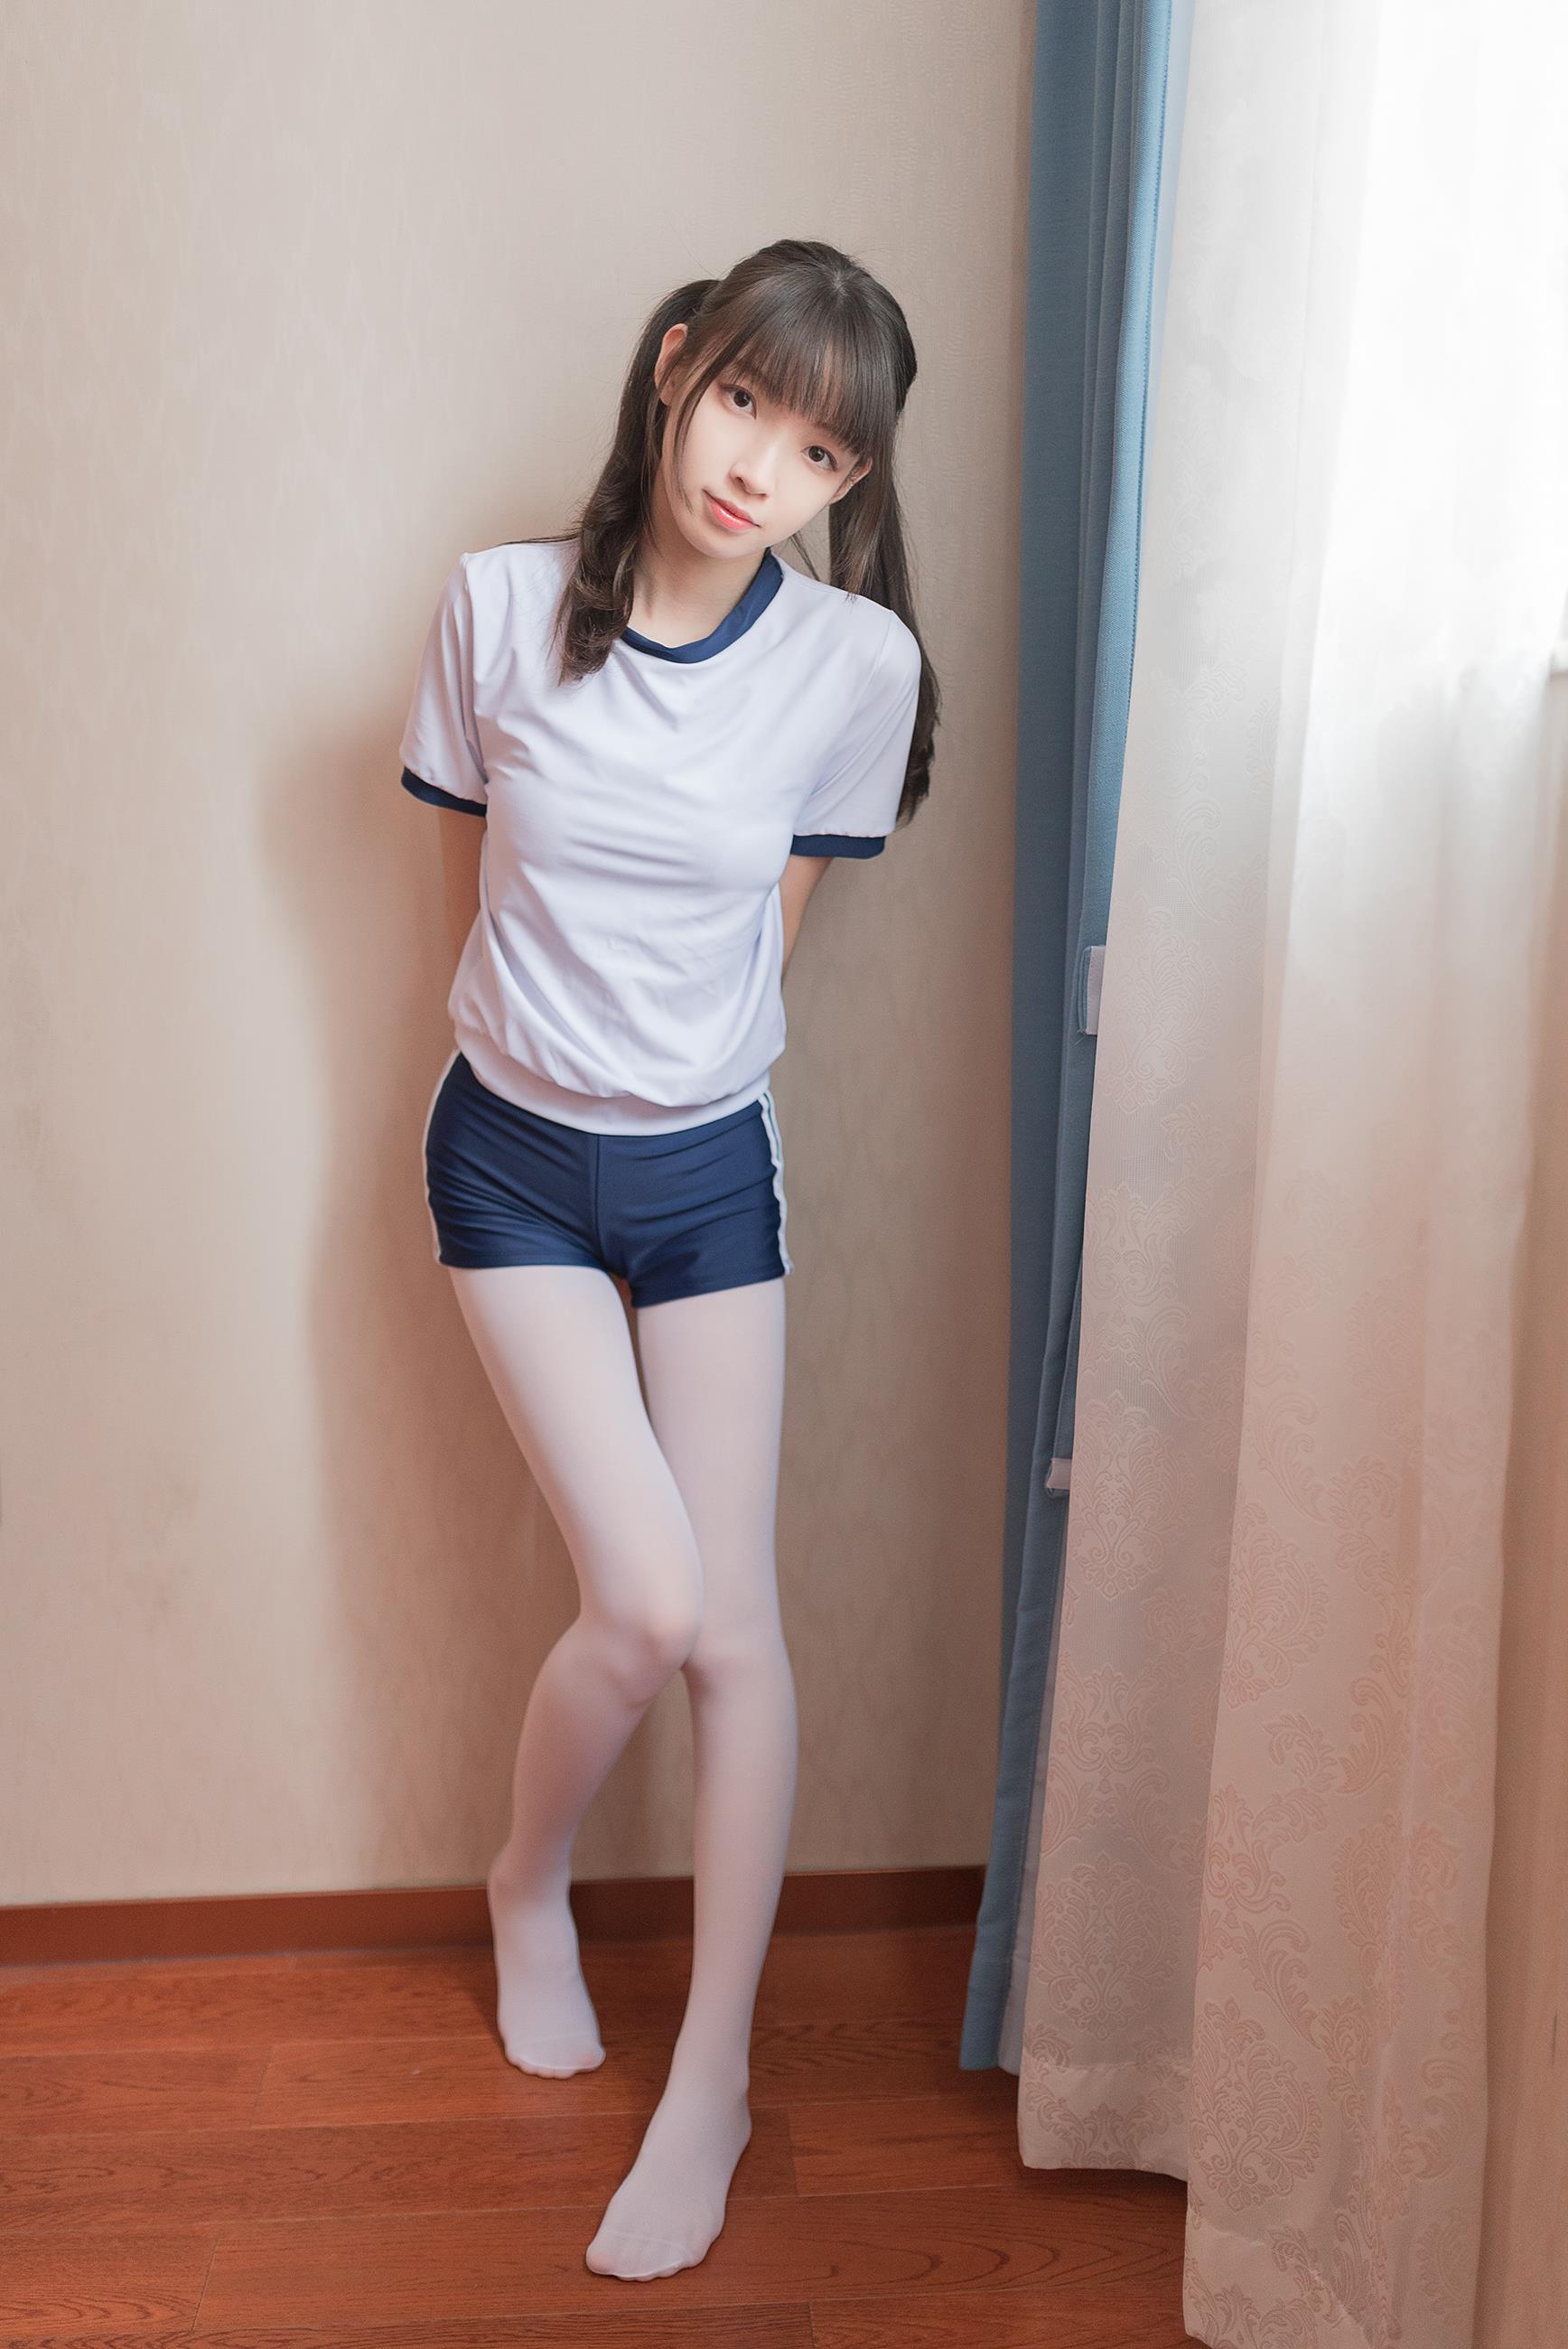 [风之领域]NO.006 清纯可爱小萝莉 白色短袖与蓝色短裤加白色丝袜美腿玉足性感私房写真集,